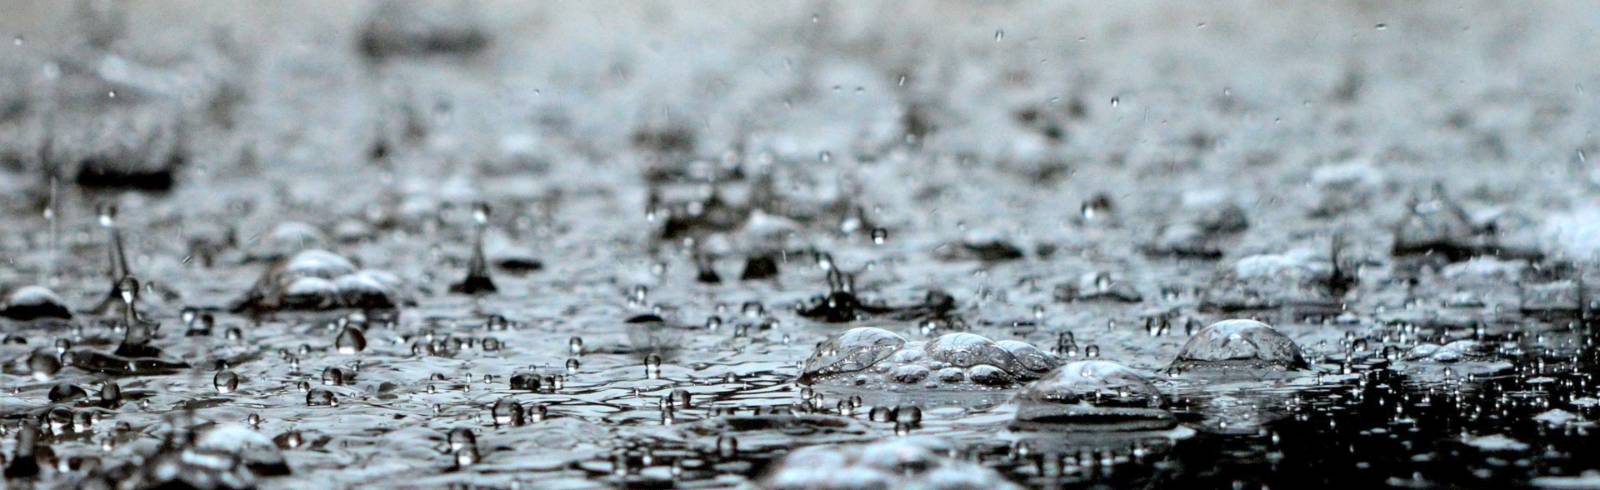 Bezirksflash: Regen sorgt für zahlreiche Schäden